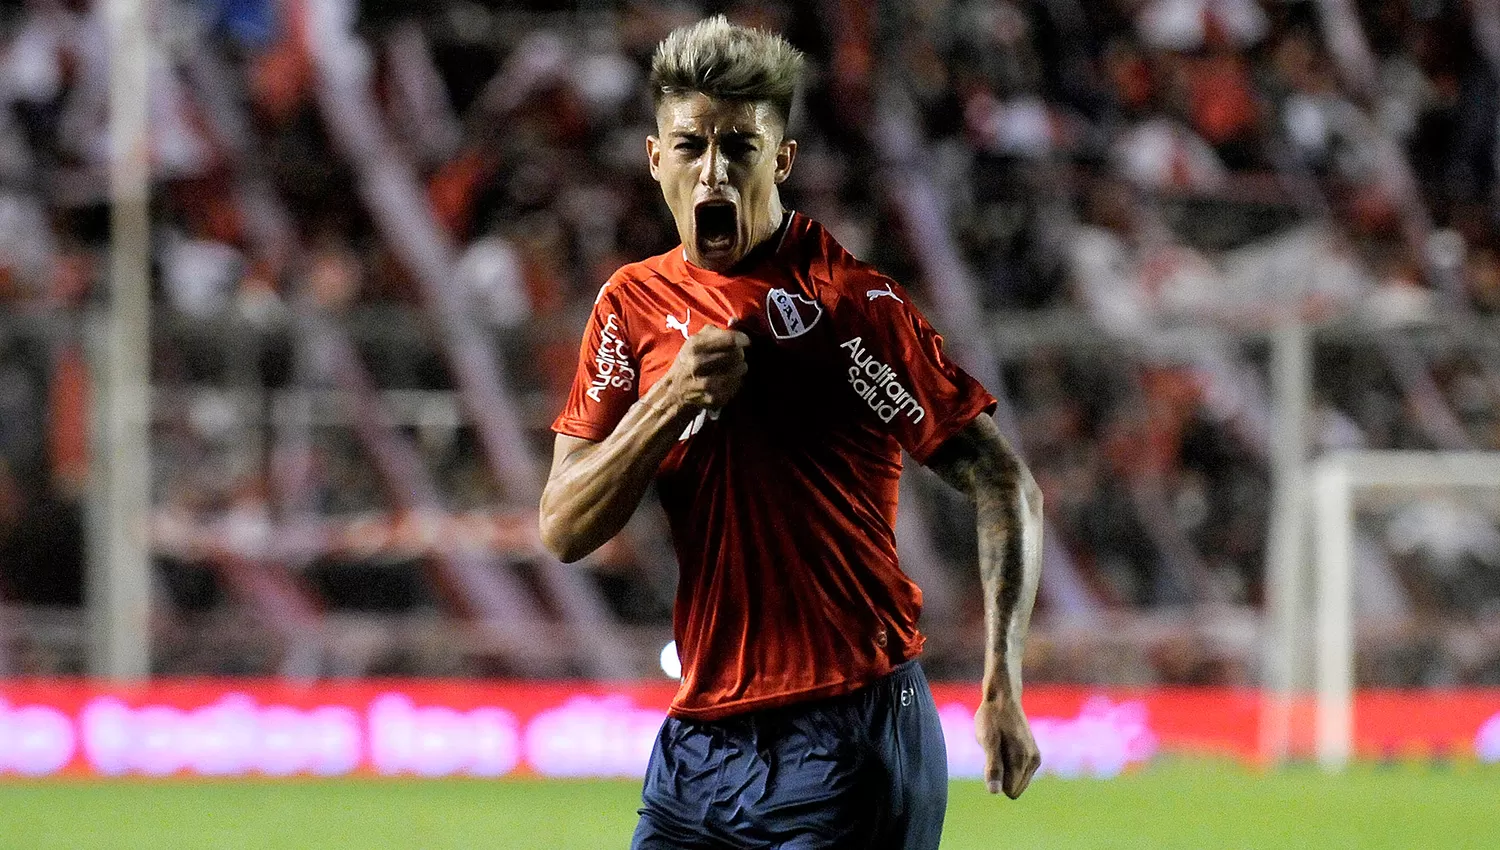 Emiliano Rigoni le convirtió el primer gol del rojo a Racing.
ARCHIVO